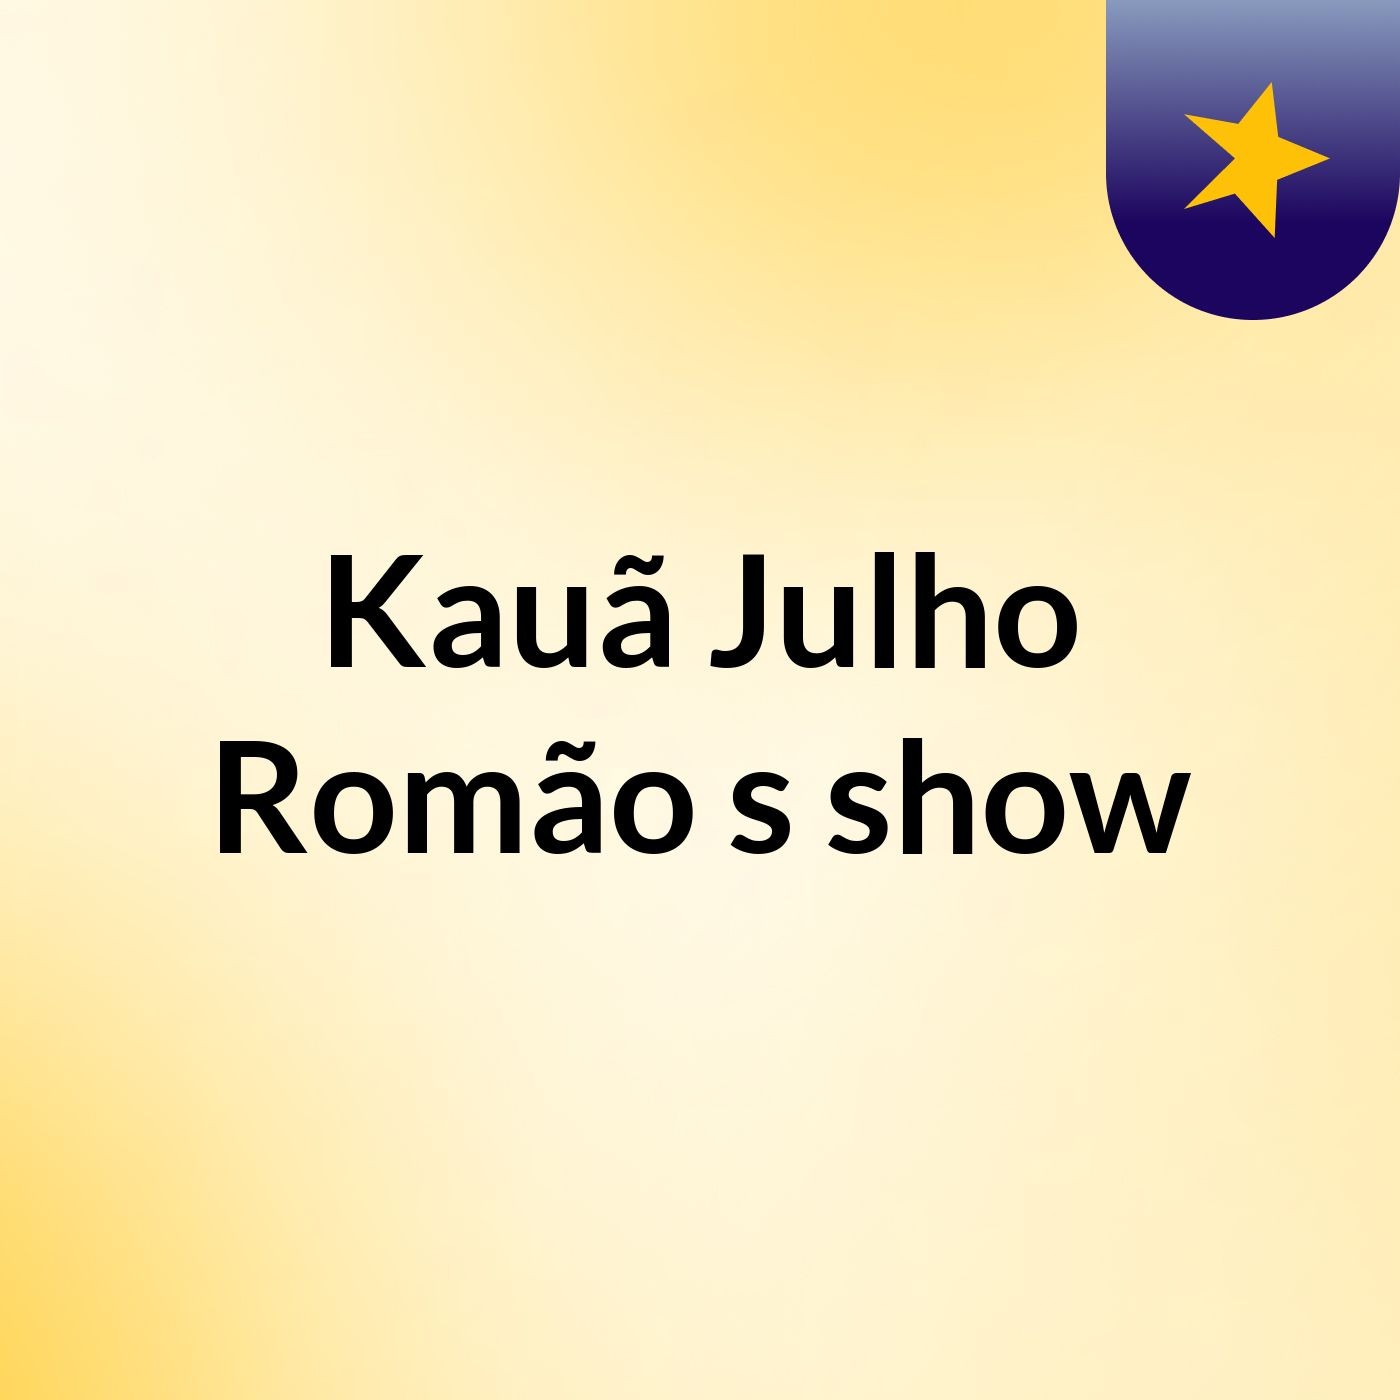 Kauã Julho Romão's show